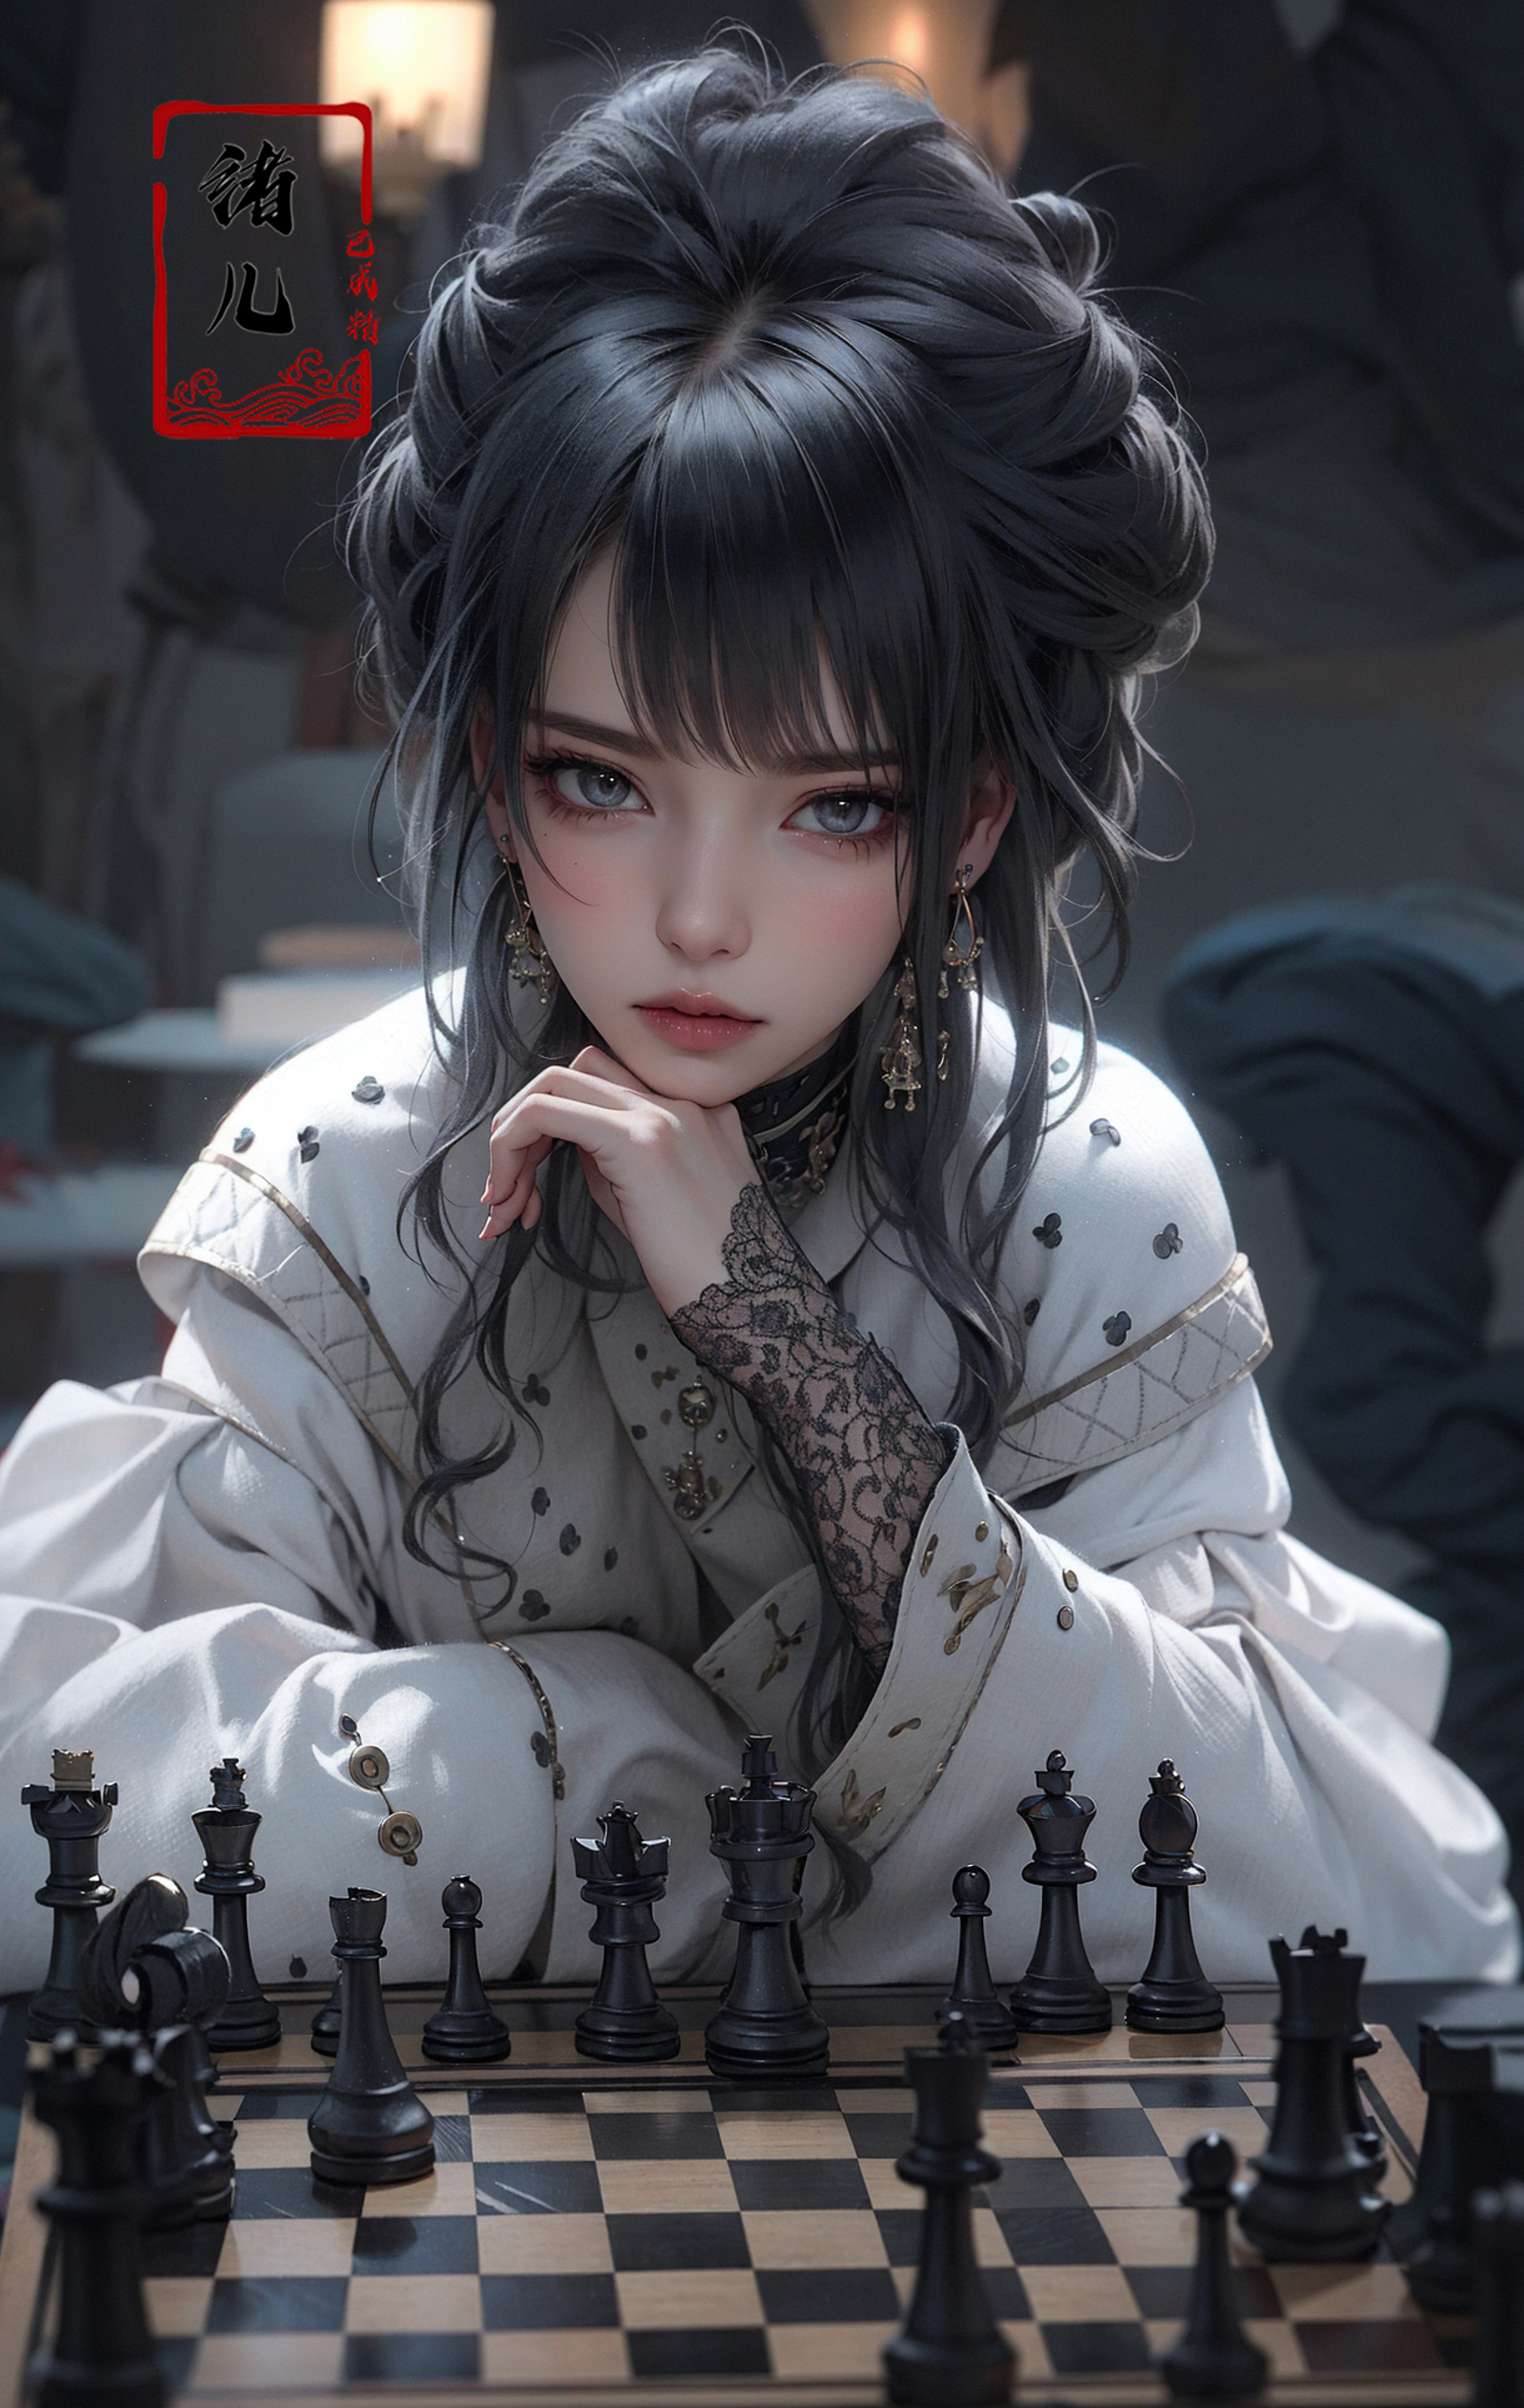 绪儿-国际象棋御姐 chess【Face model】 image by XRYCJ